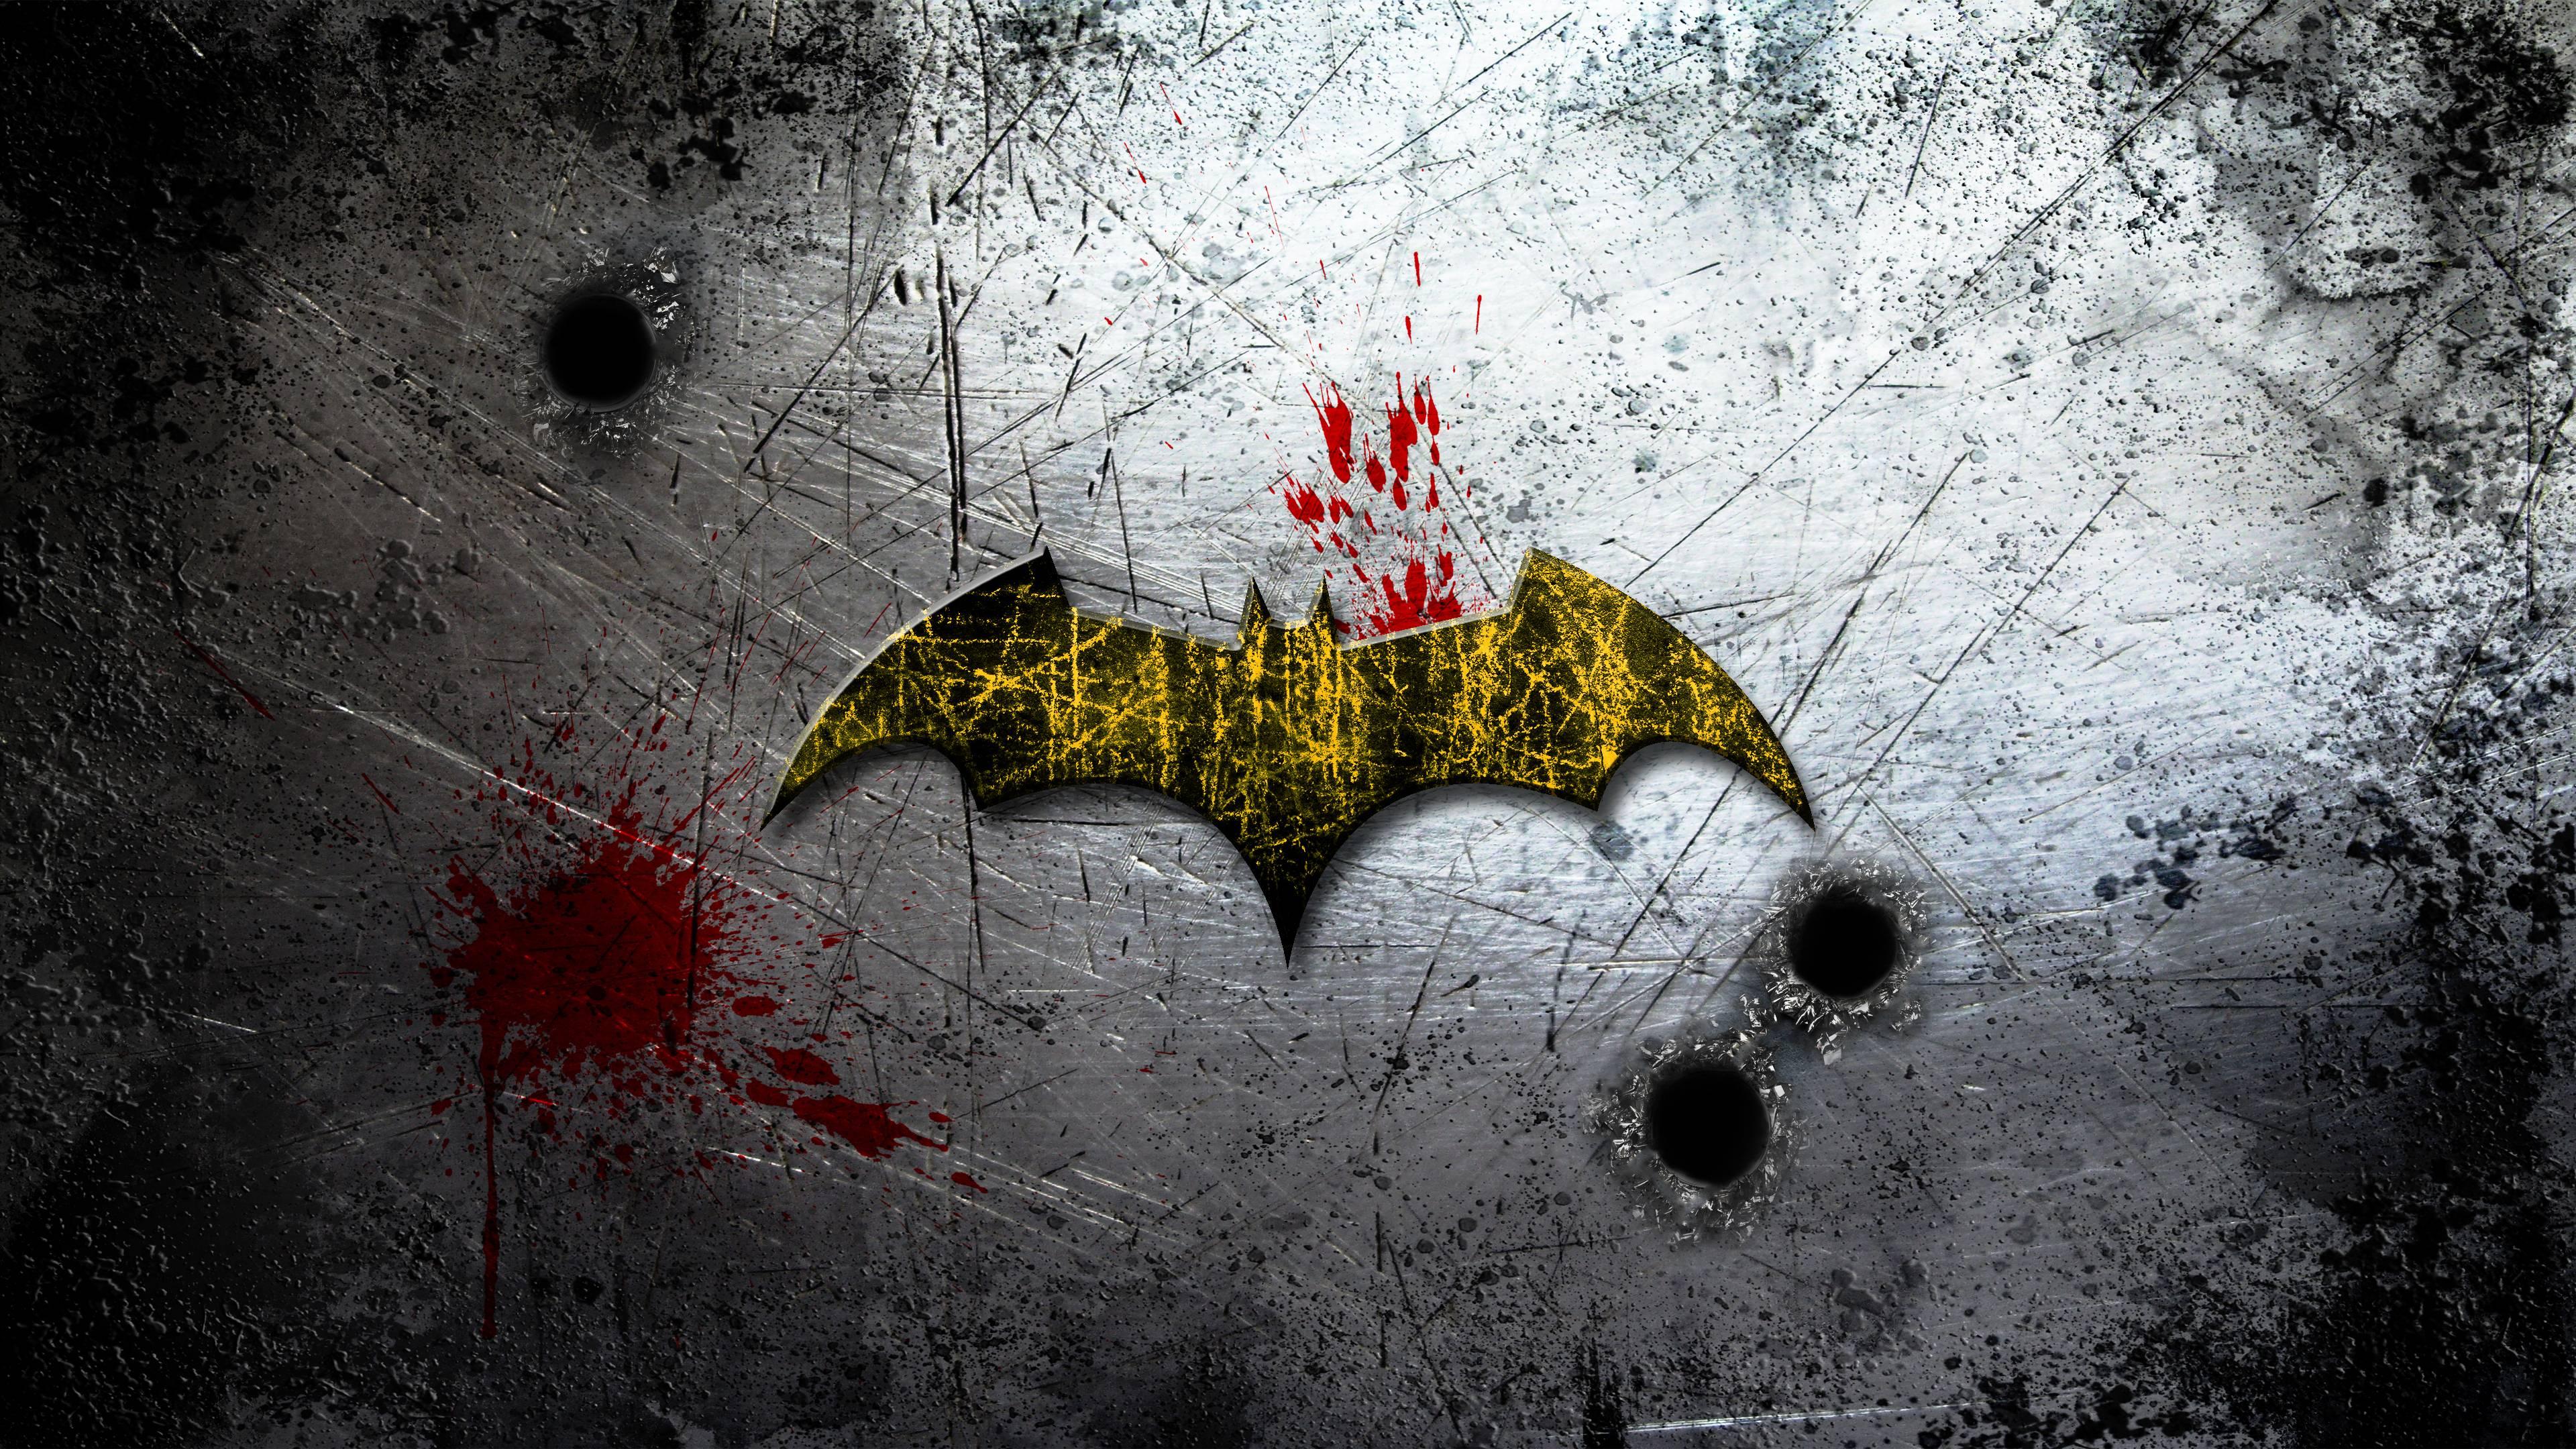 3840 x 2160 · jpeg - Batman 4k Ultra HD Wallpaper | Background Image | 3840x2160 | ID:463466 ...